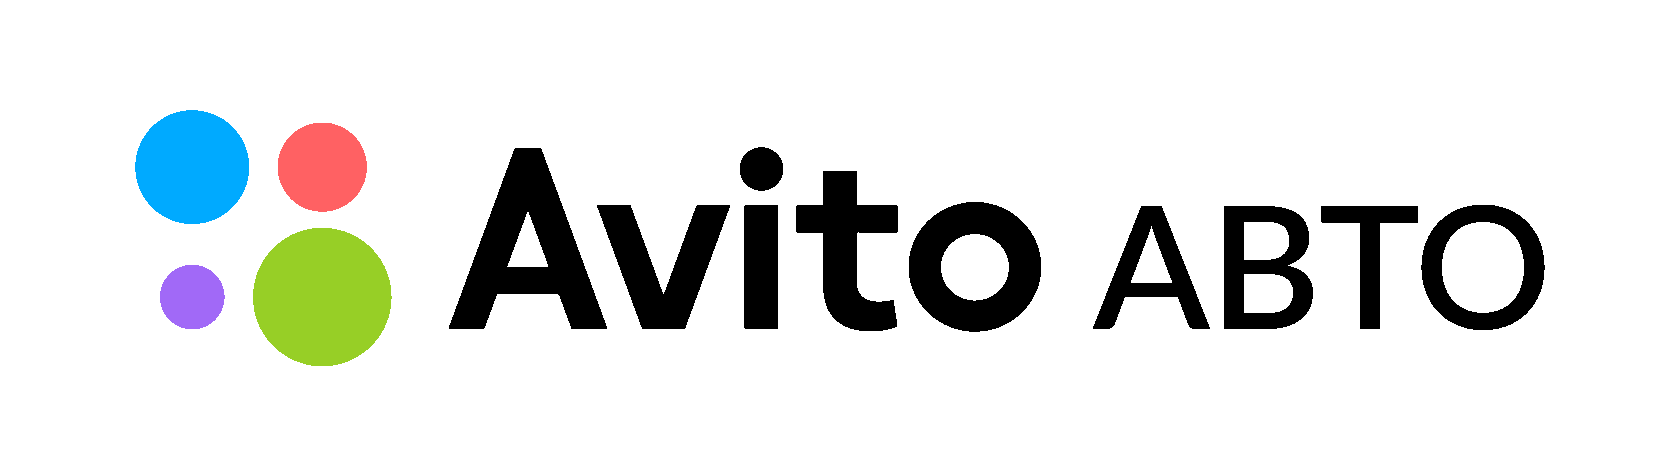 Name avito file name. Авито логотип без фона. Avito иконка. Авито эмблема. Значок авито на прозрачном фоне.